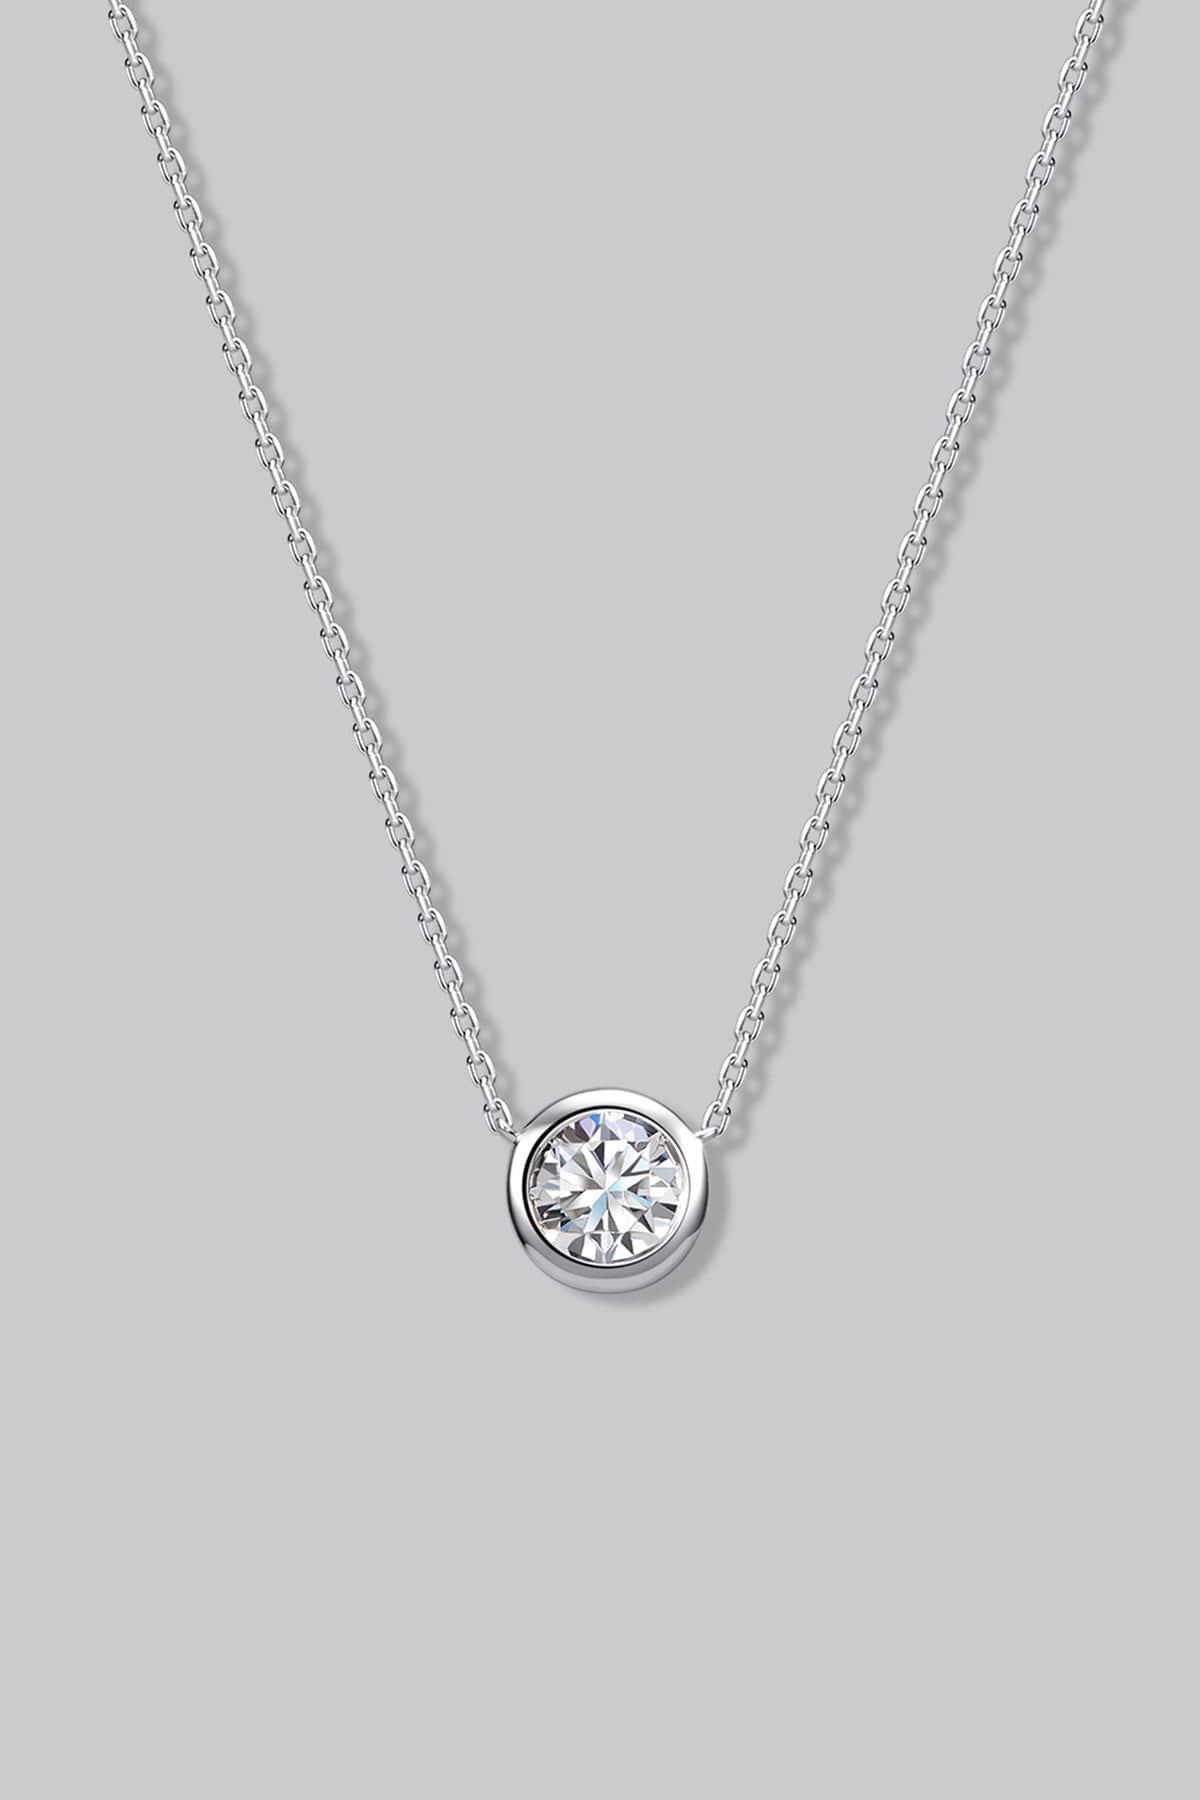 Round Diamond Necklace (0.45ct) - APM Monaco